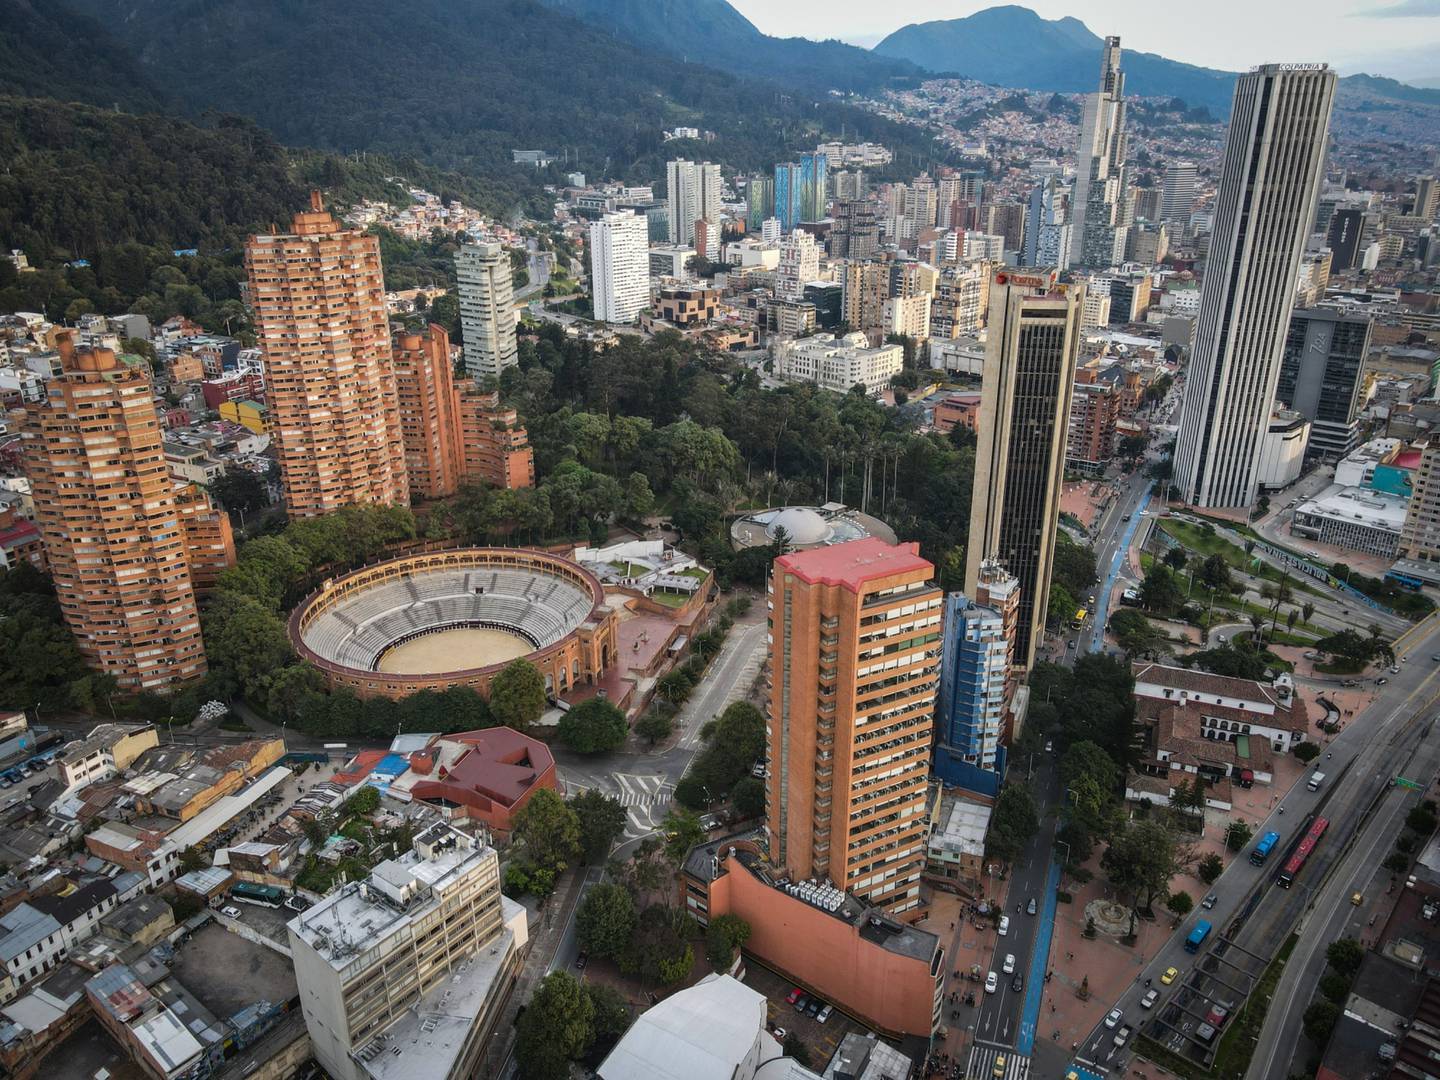 Edificios en Bogotá, Colombia, el sábado 9 de abril de 2022. Fotógrafo: Nathalia Angarita/Bloombergdfd